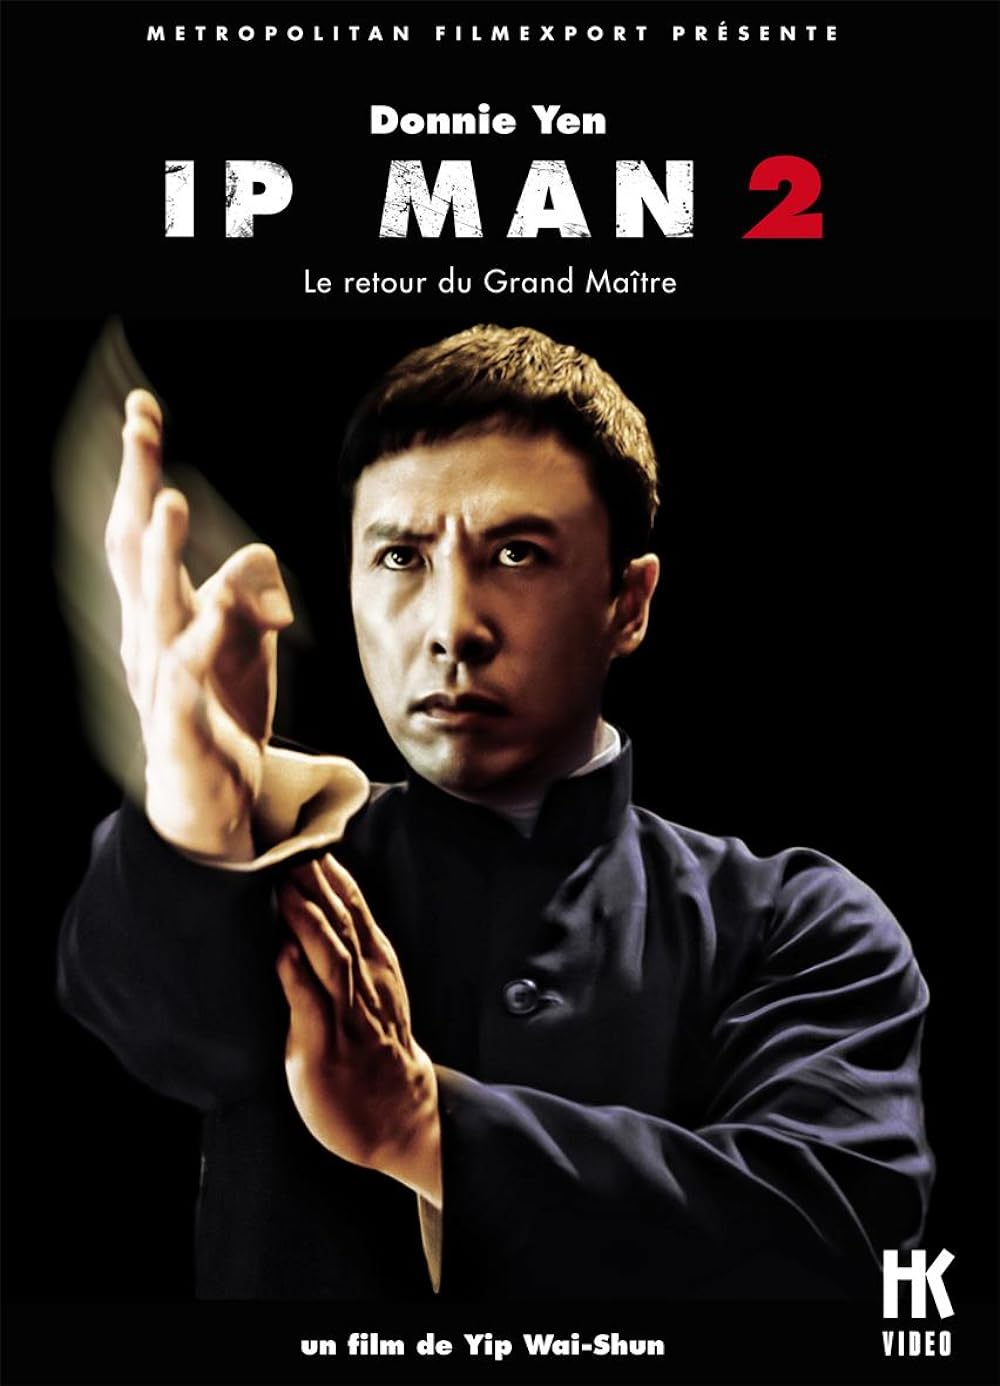 Ip Man 2 (2010) 2431Kbps 23.976Fps 48Khz BluRay DTS-HD MA 5.1Ch Turkish Audio TAC